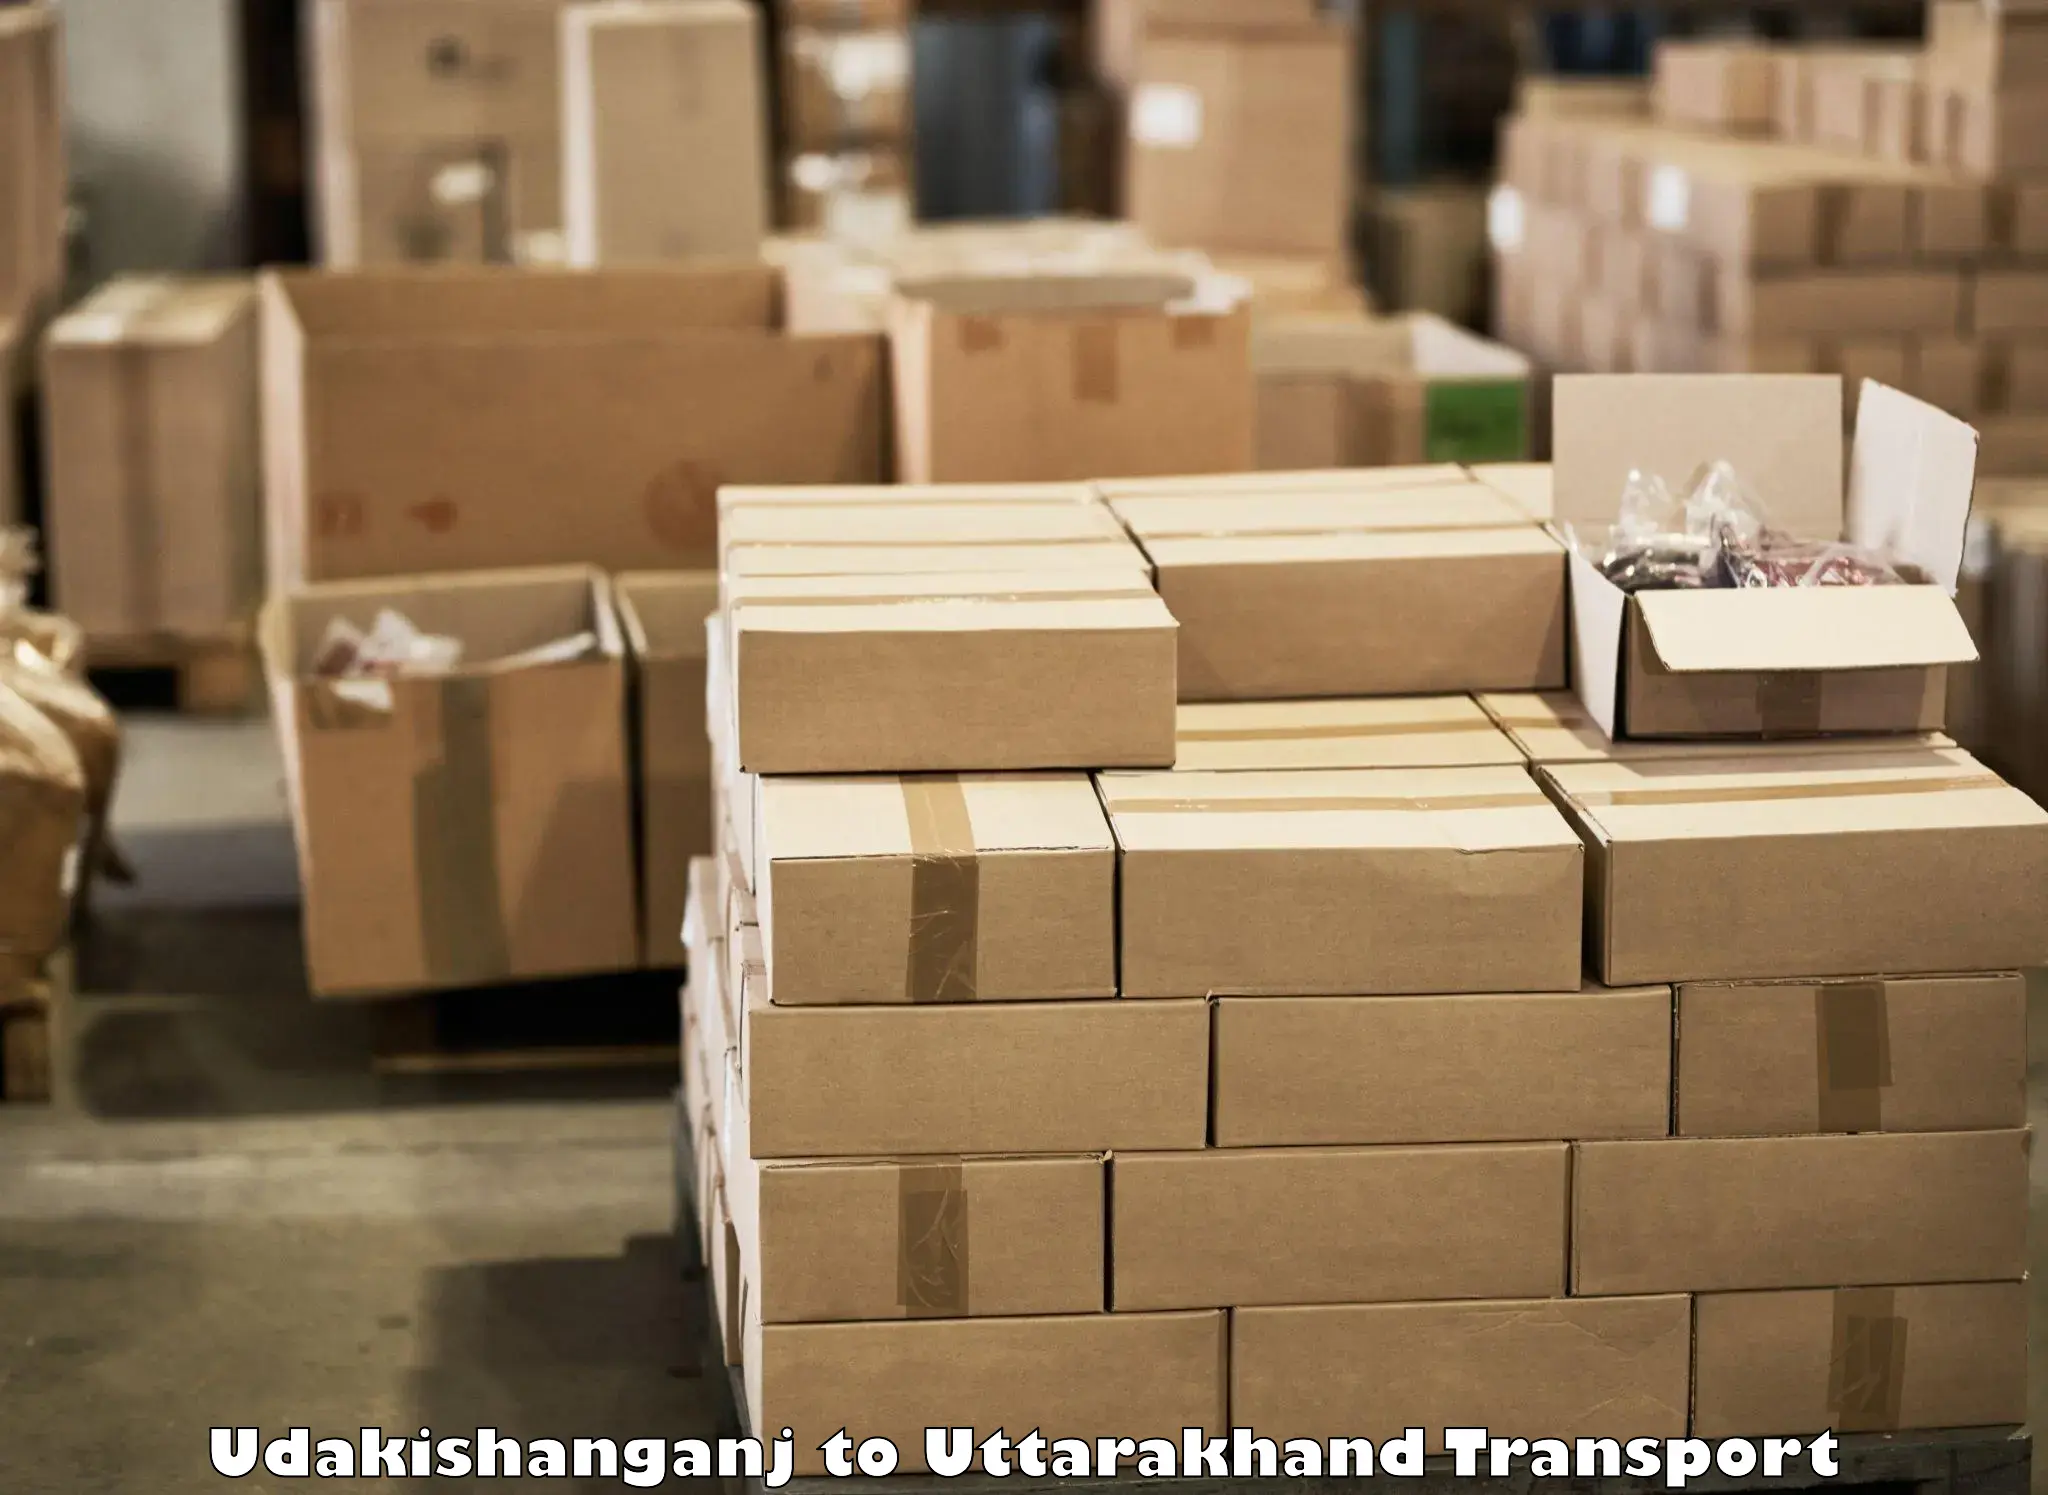 Vehicle transport services Udakishanganj to Lohaghat